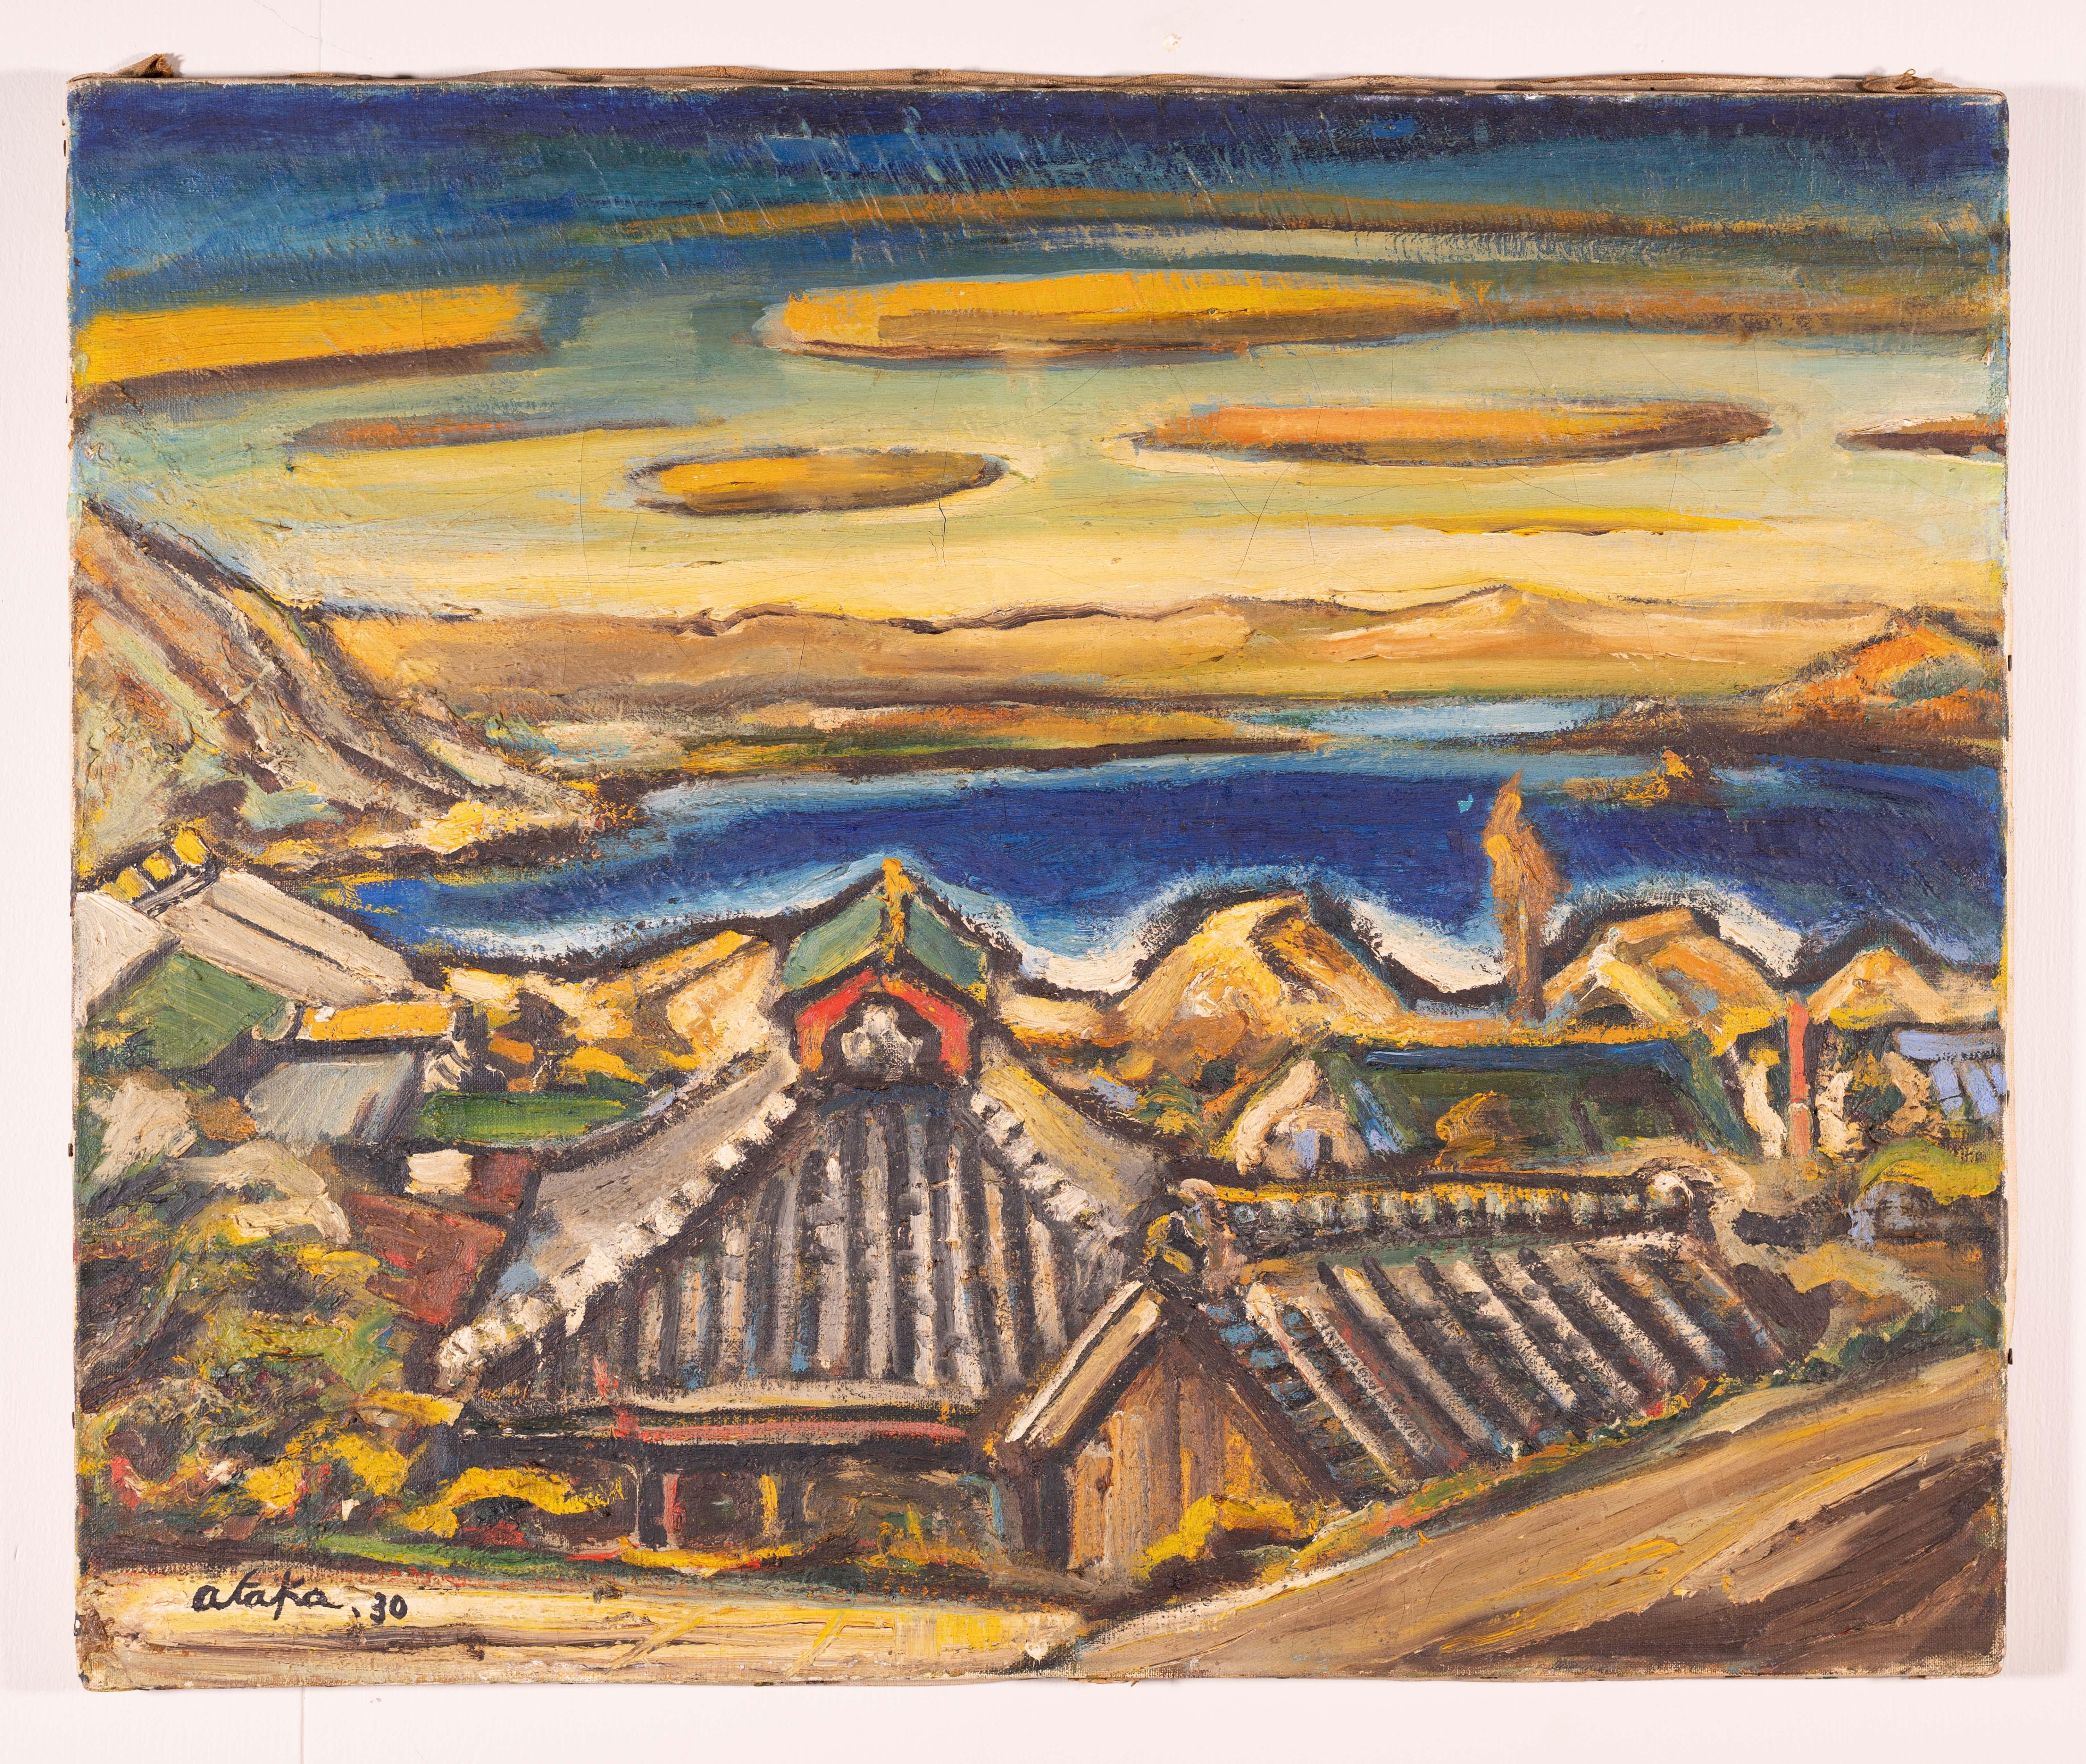 Une peinture à l'huile moderne d'une ville portuaire avec une vue sur l'eau et les montagnes au loin.
Il est signé dans le coin inférieur gauche par Ataka et daté '30 (1930).
Le travail au pinceau est audacieux et confiant. Ataka a voyagé en